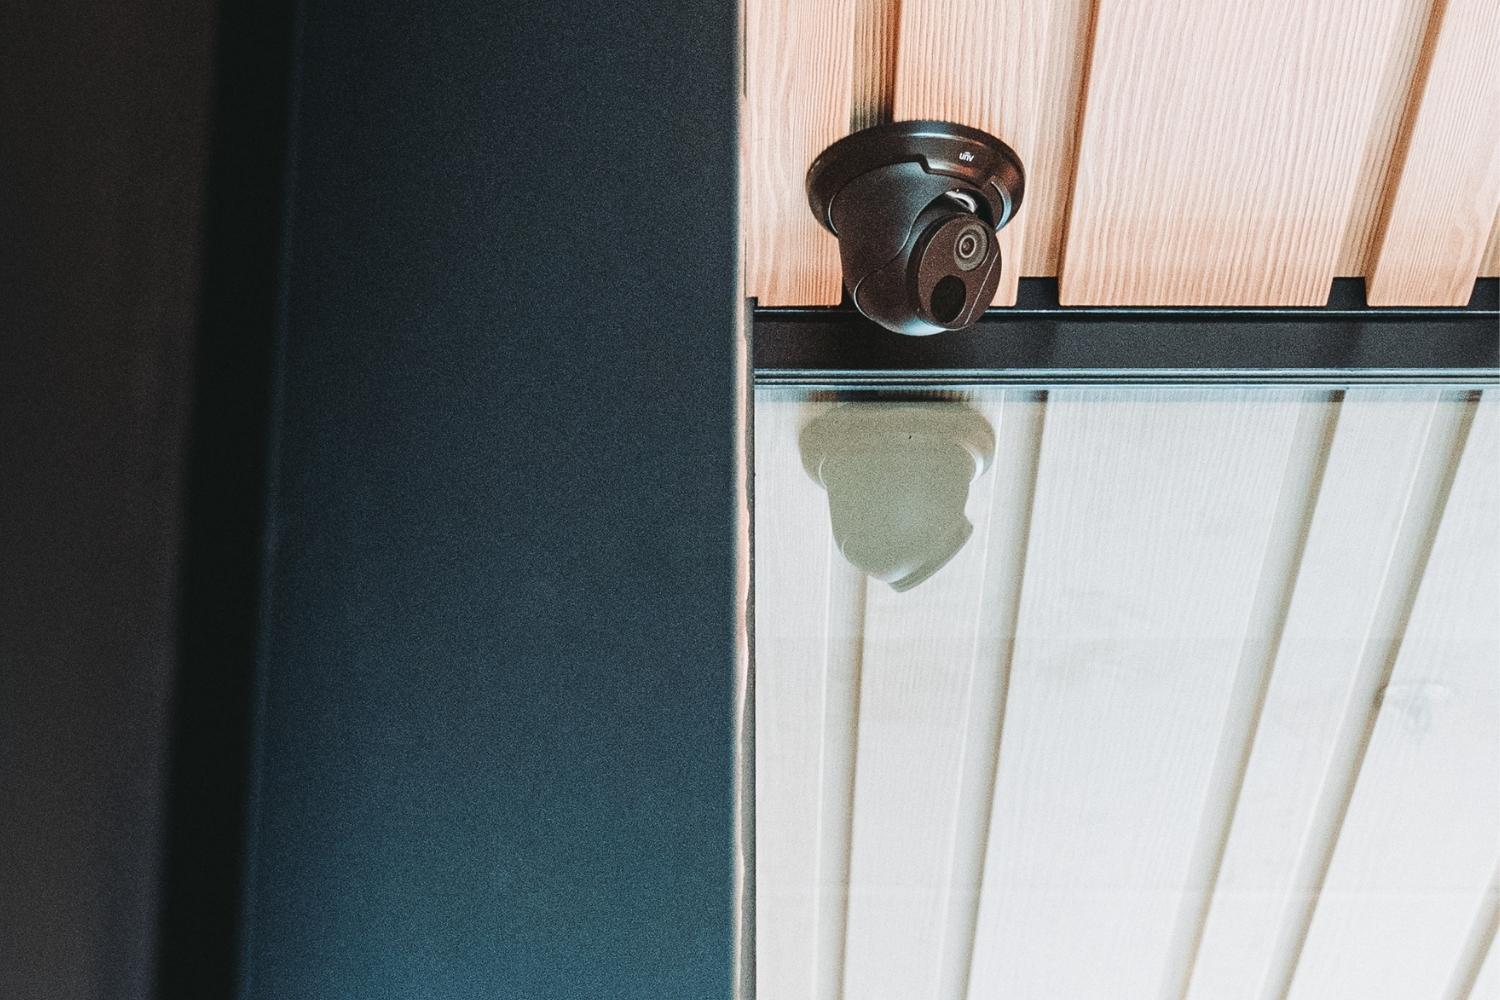 Zijn er specifieke overwegingen voor de optimale plaatsing van beveiligingscamera's in huis